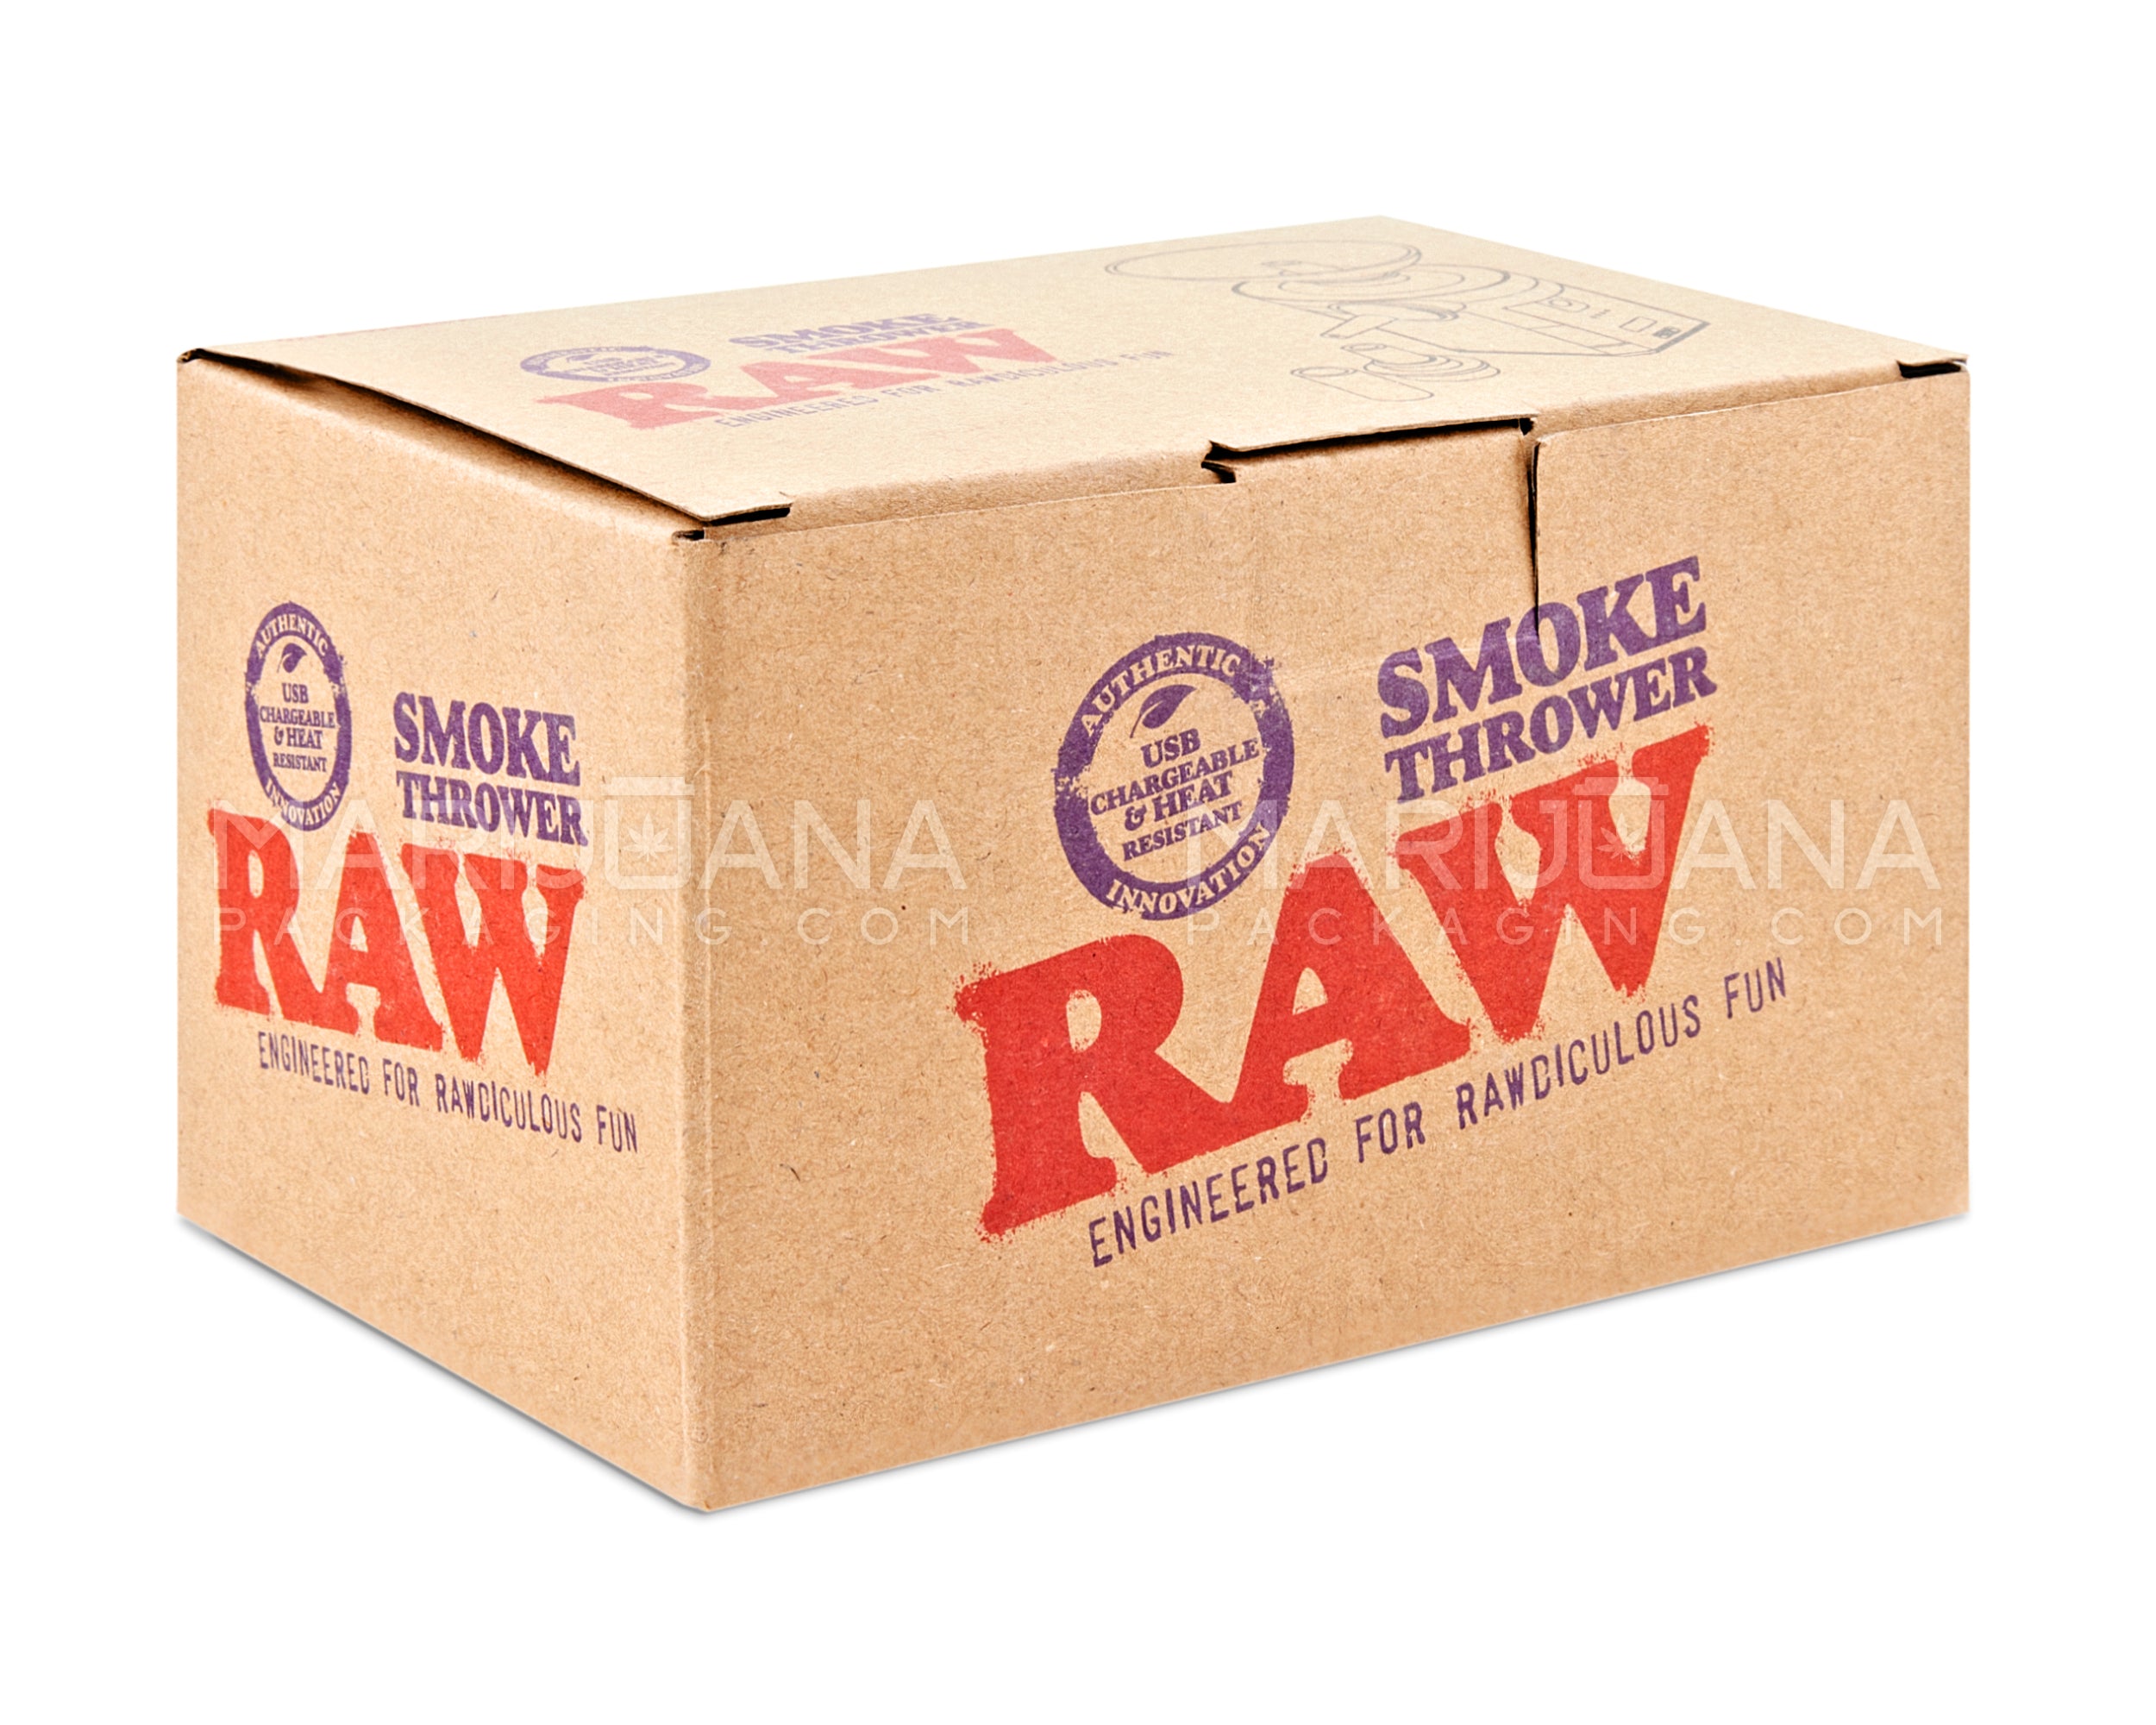 RAW Smoke Thrower